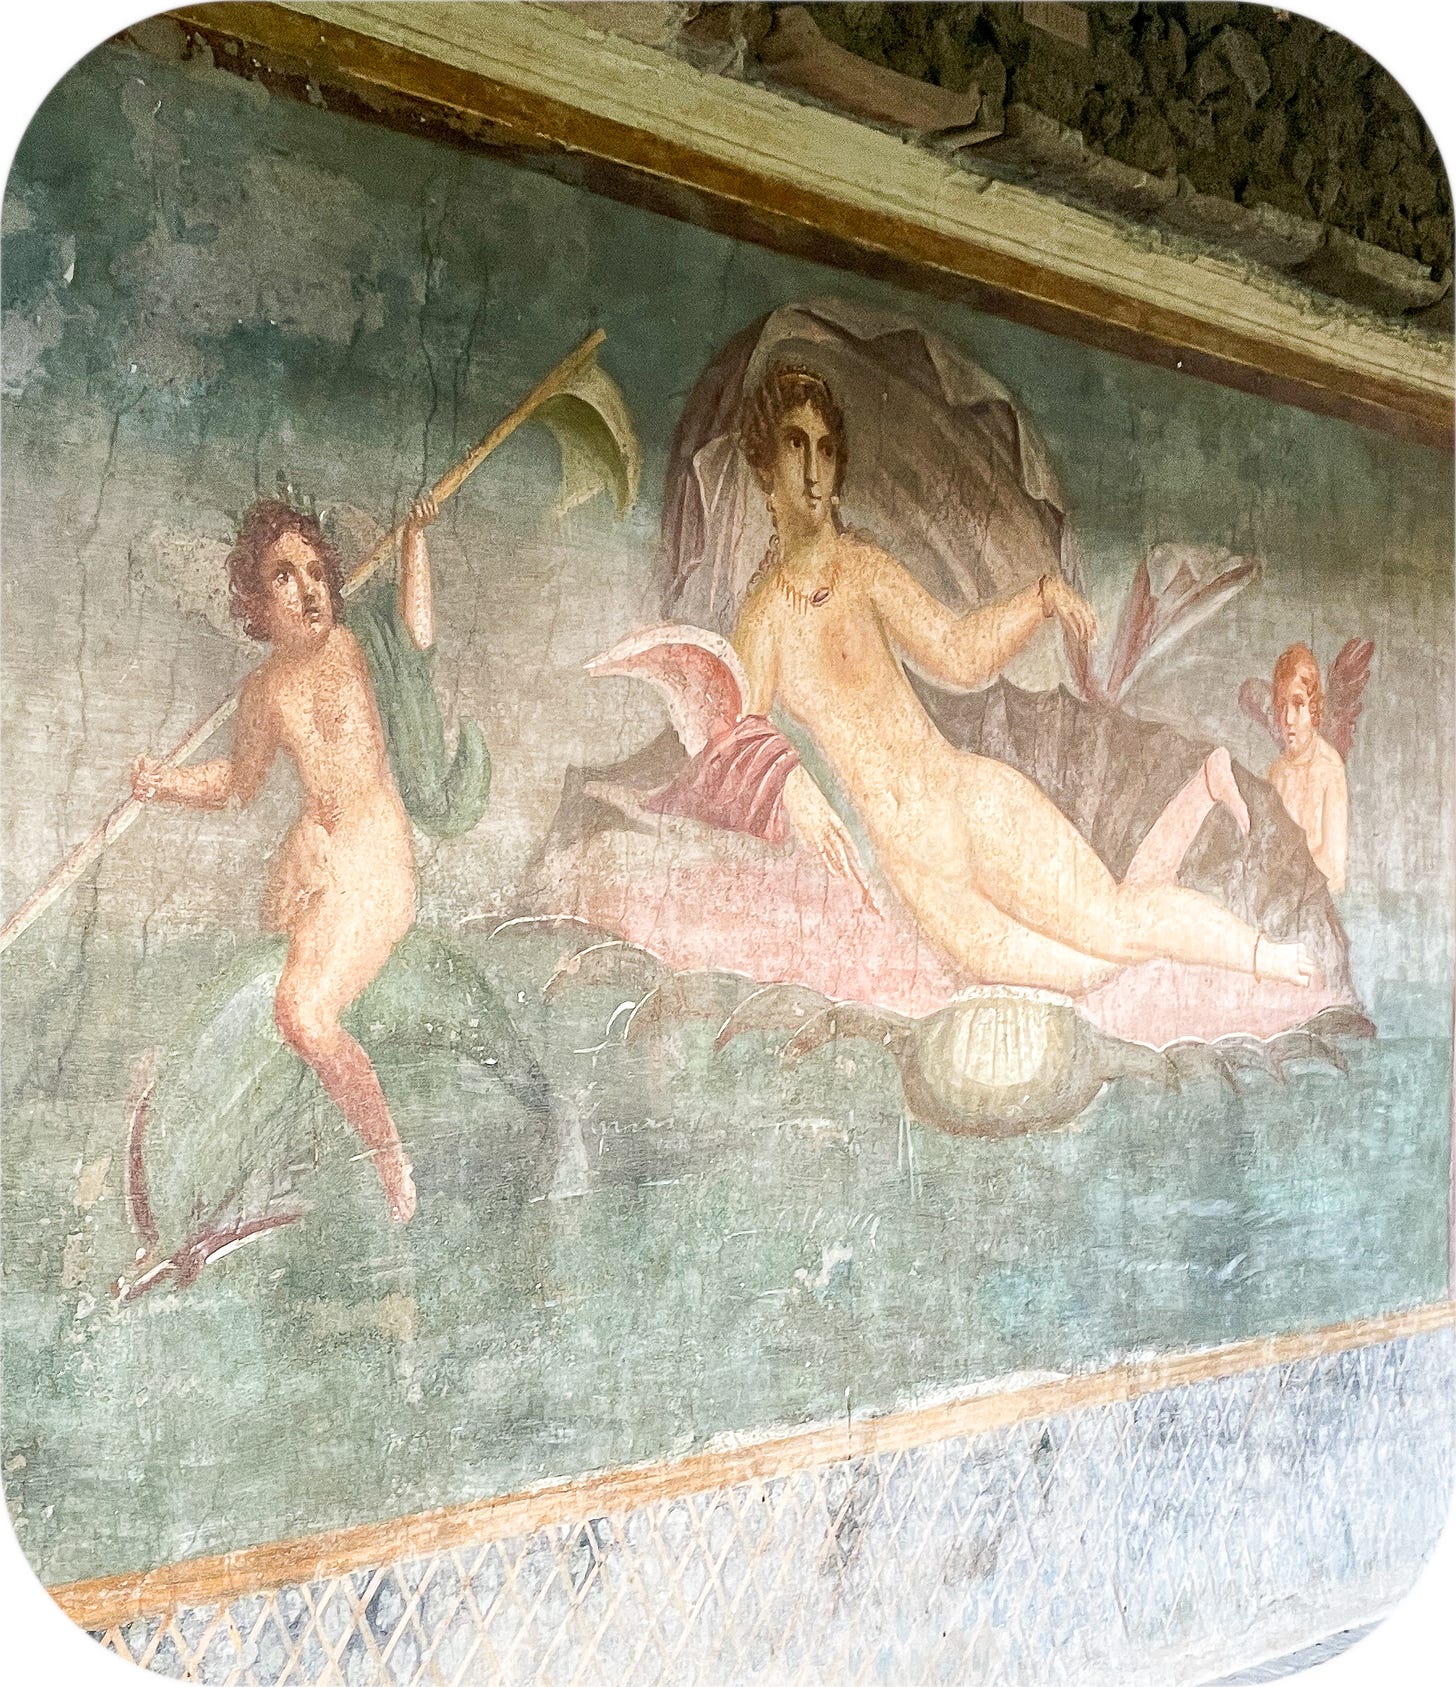 Fresco, Pompeii, Italy